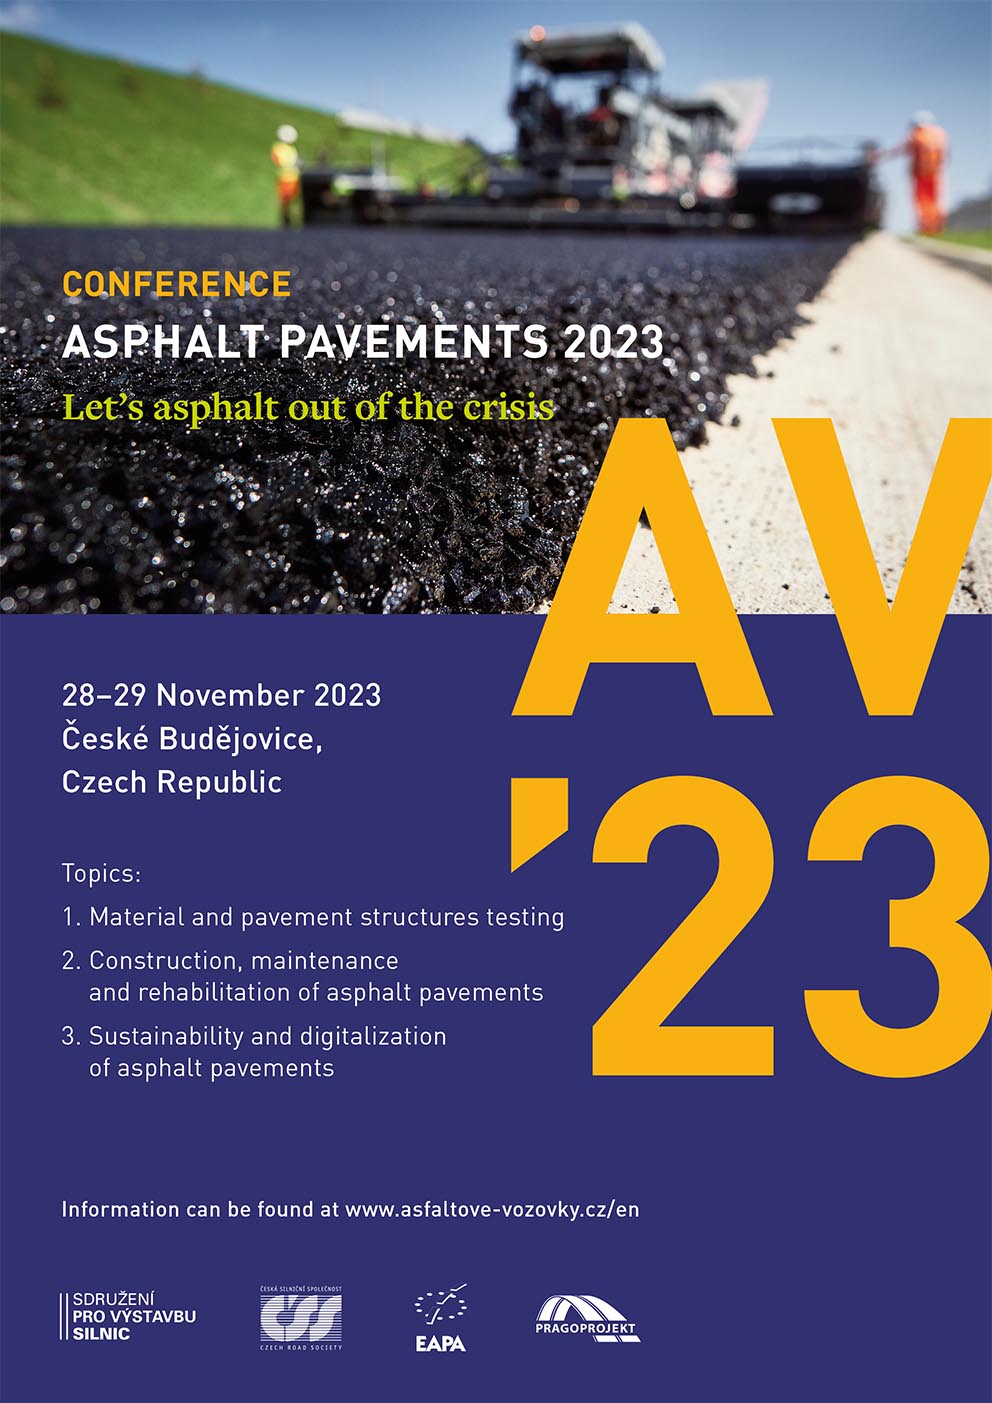 ASPHALT PAVEMENTS 2023 “Let’s asphalt out of the crisis" EAPA